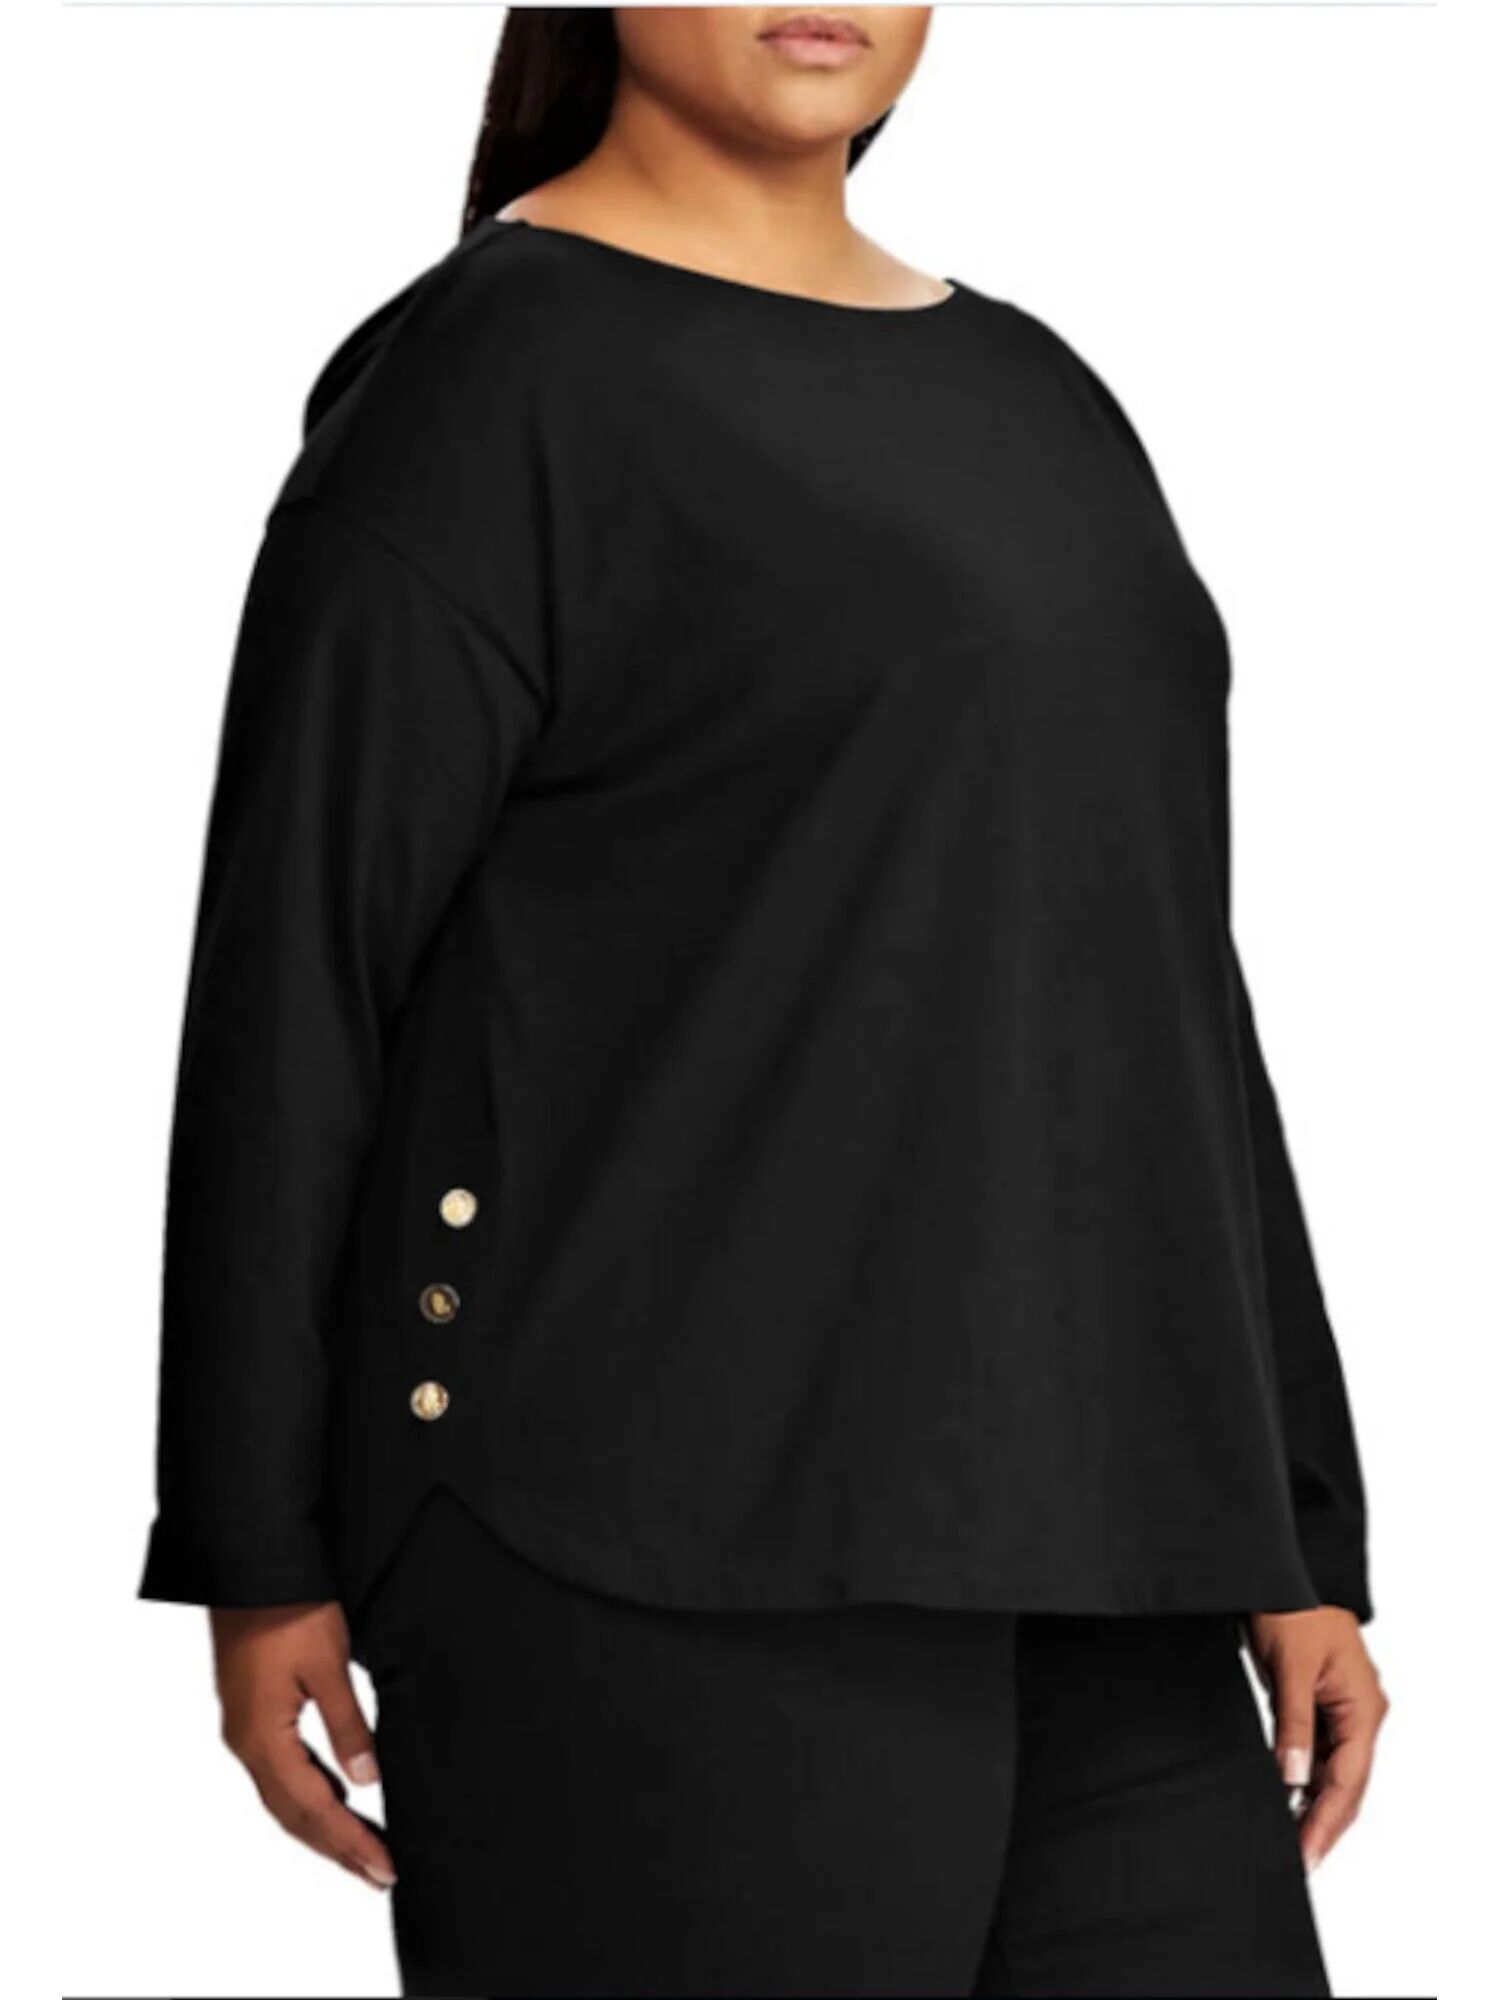 Ralph Lauren Women's Long Sleeve Boat Neck Top Black Size 1X